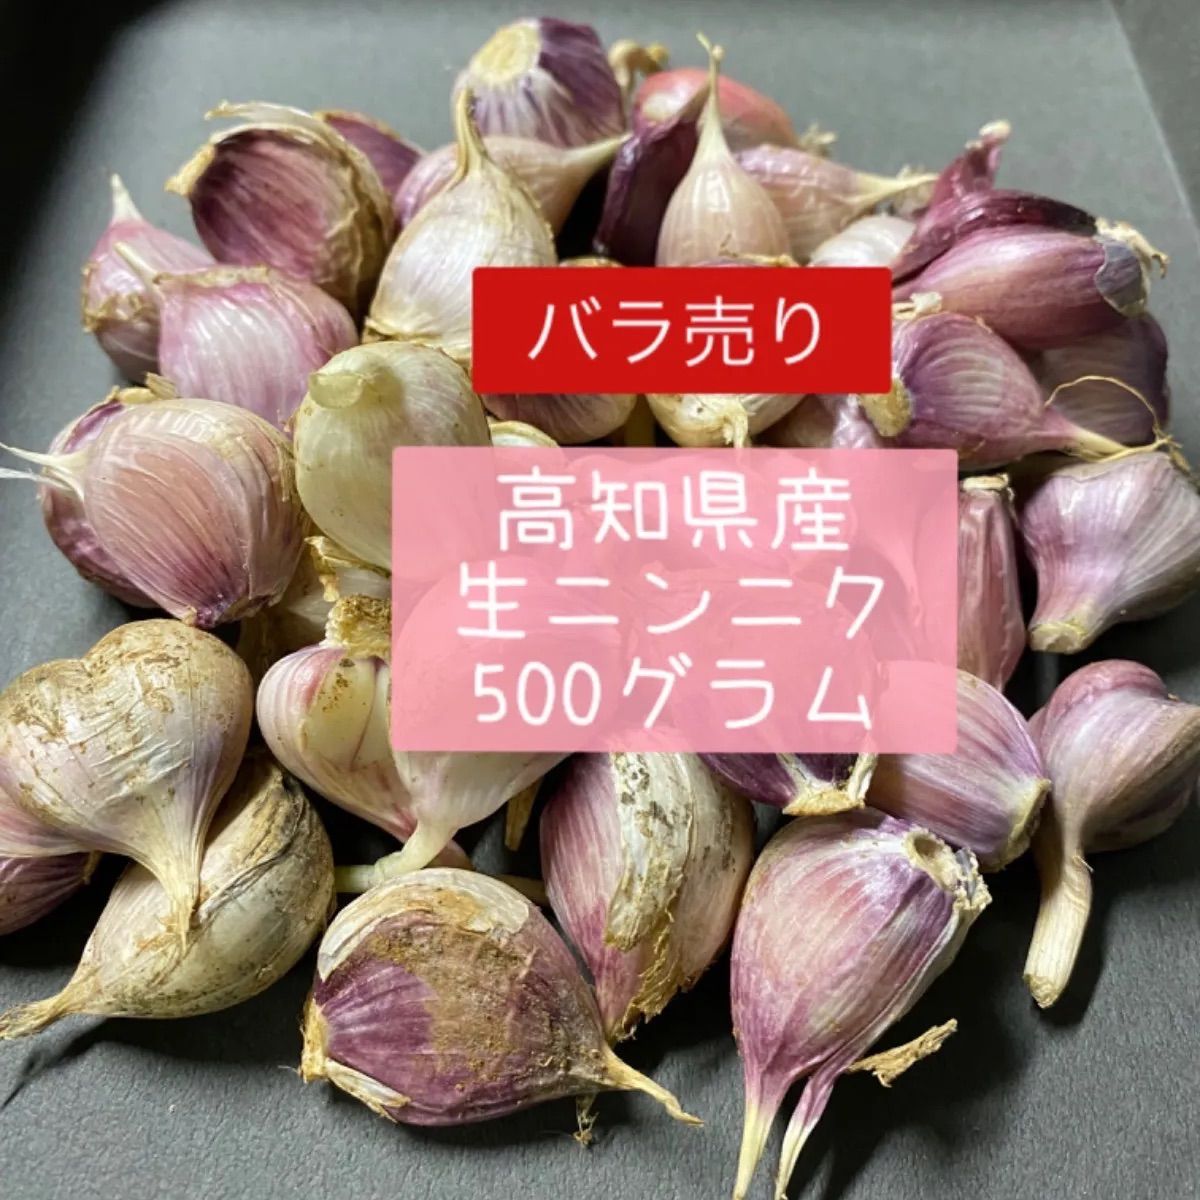 生ニンニク バラ売り 500グラム - みぃみ農園 - メルカリ